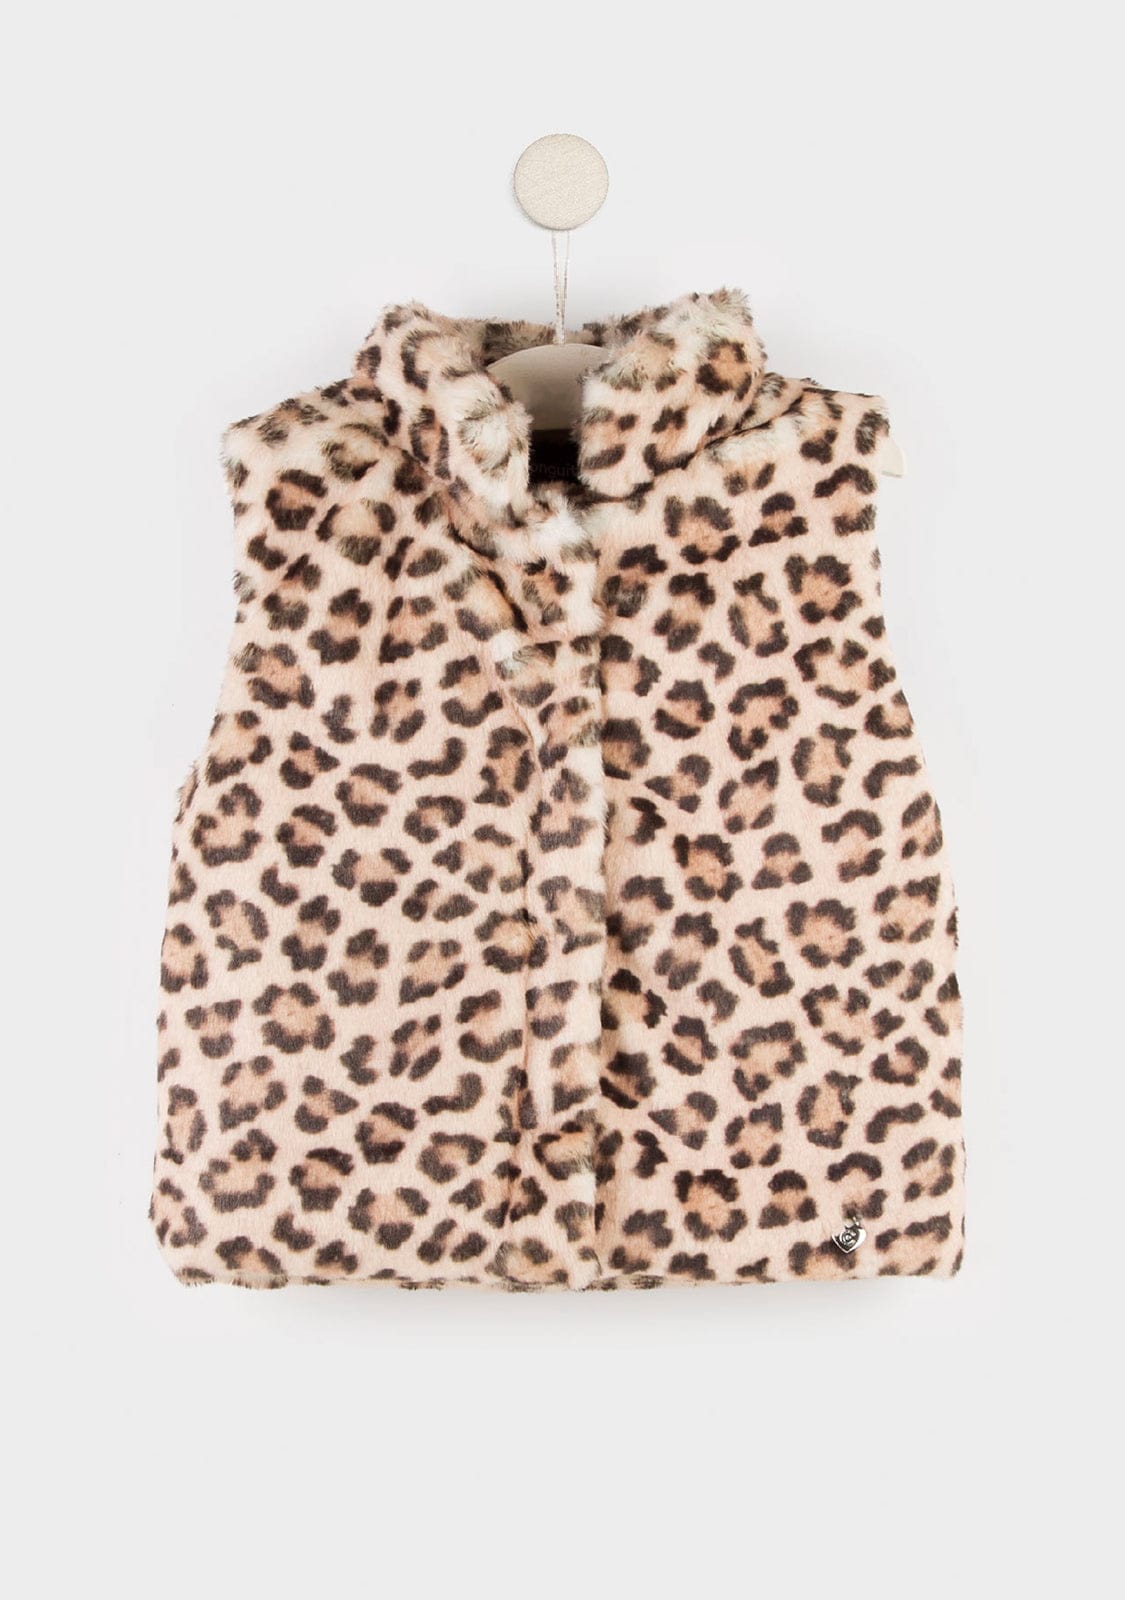 CONGUITOS TEXTIL Clothing Girl's Leopard Fur Vest